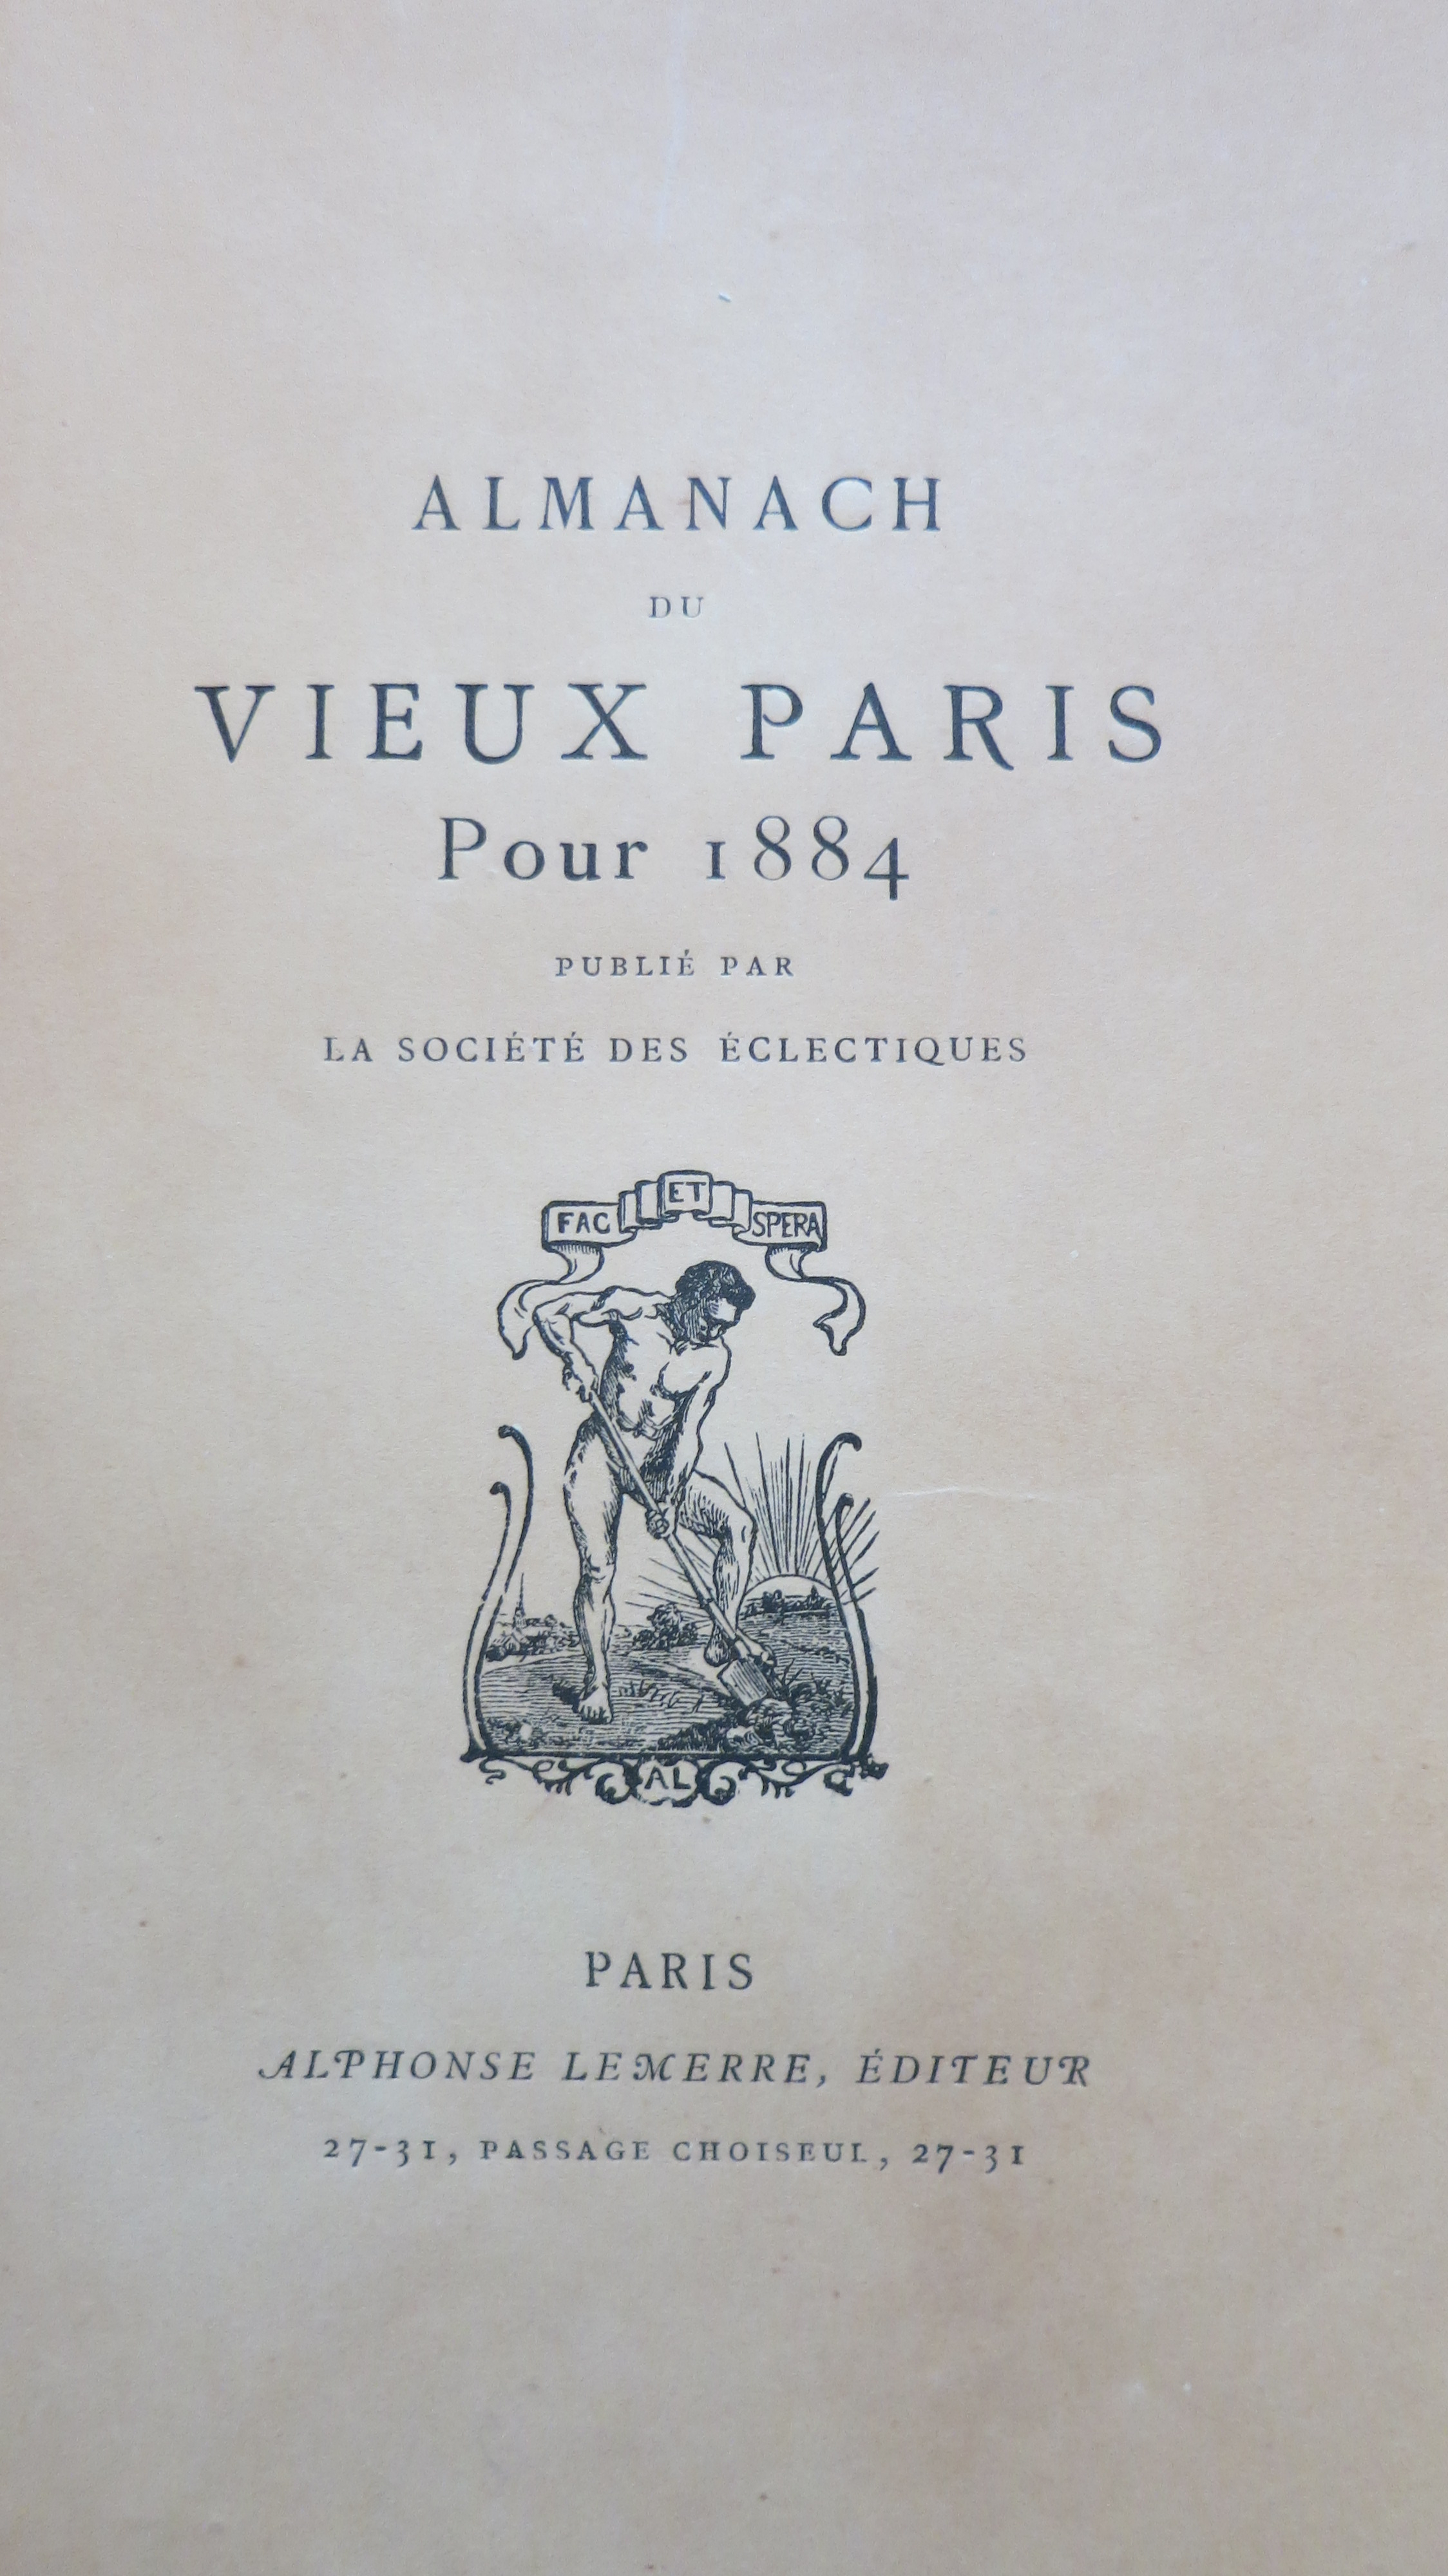 Almanach du vieux Paris pour 1884